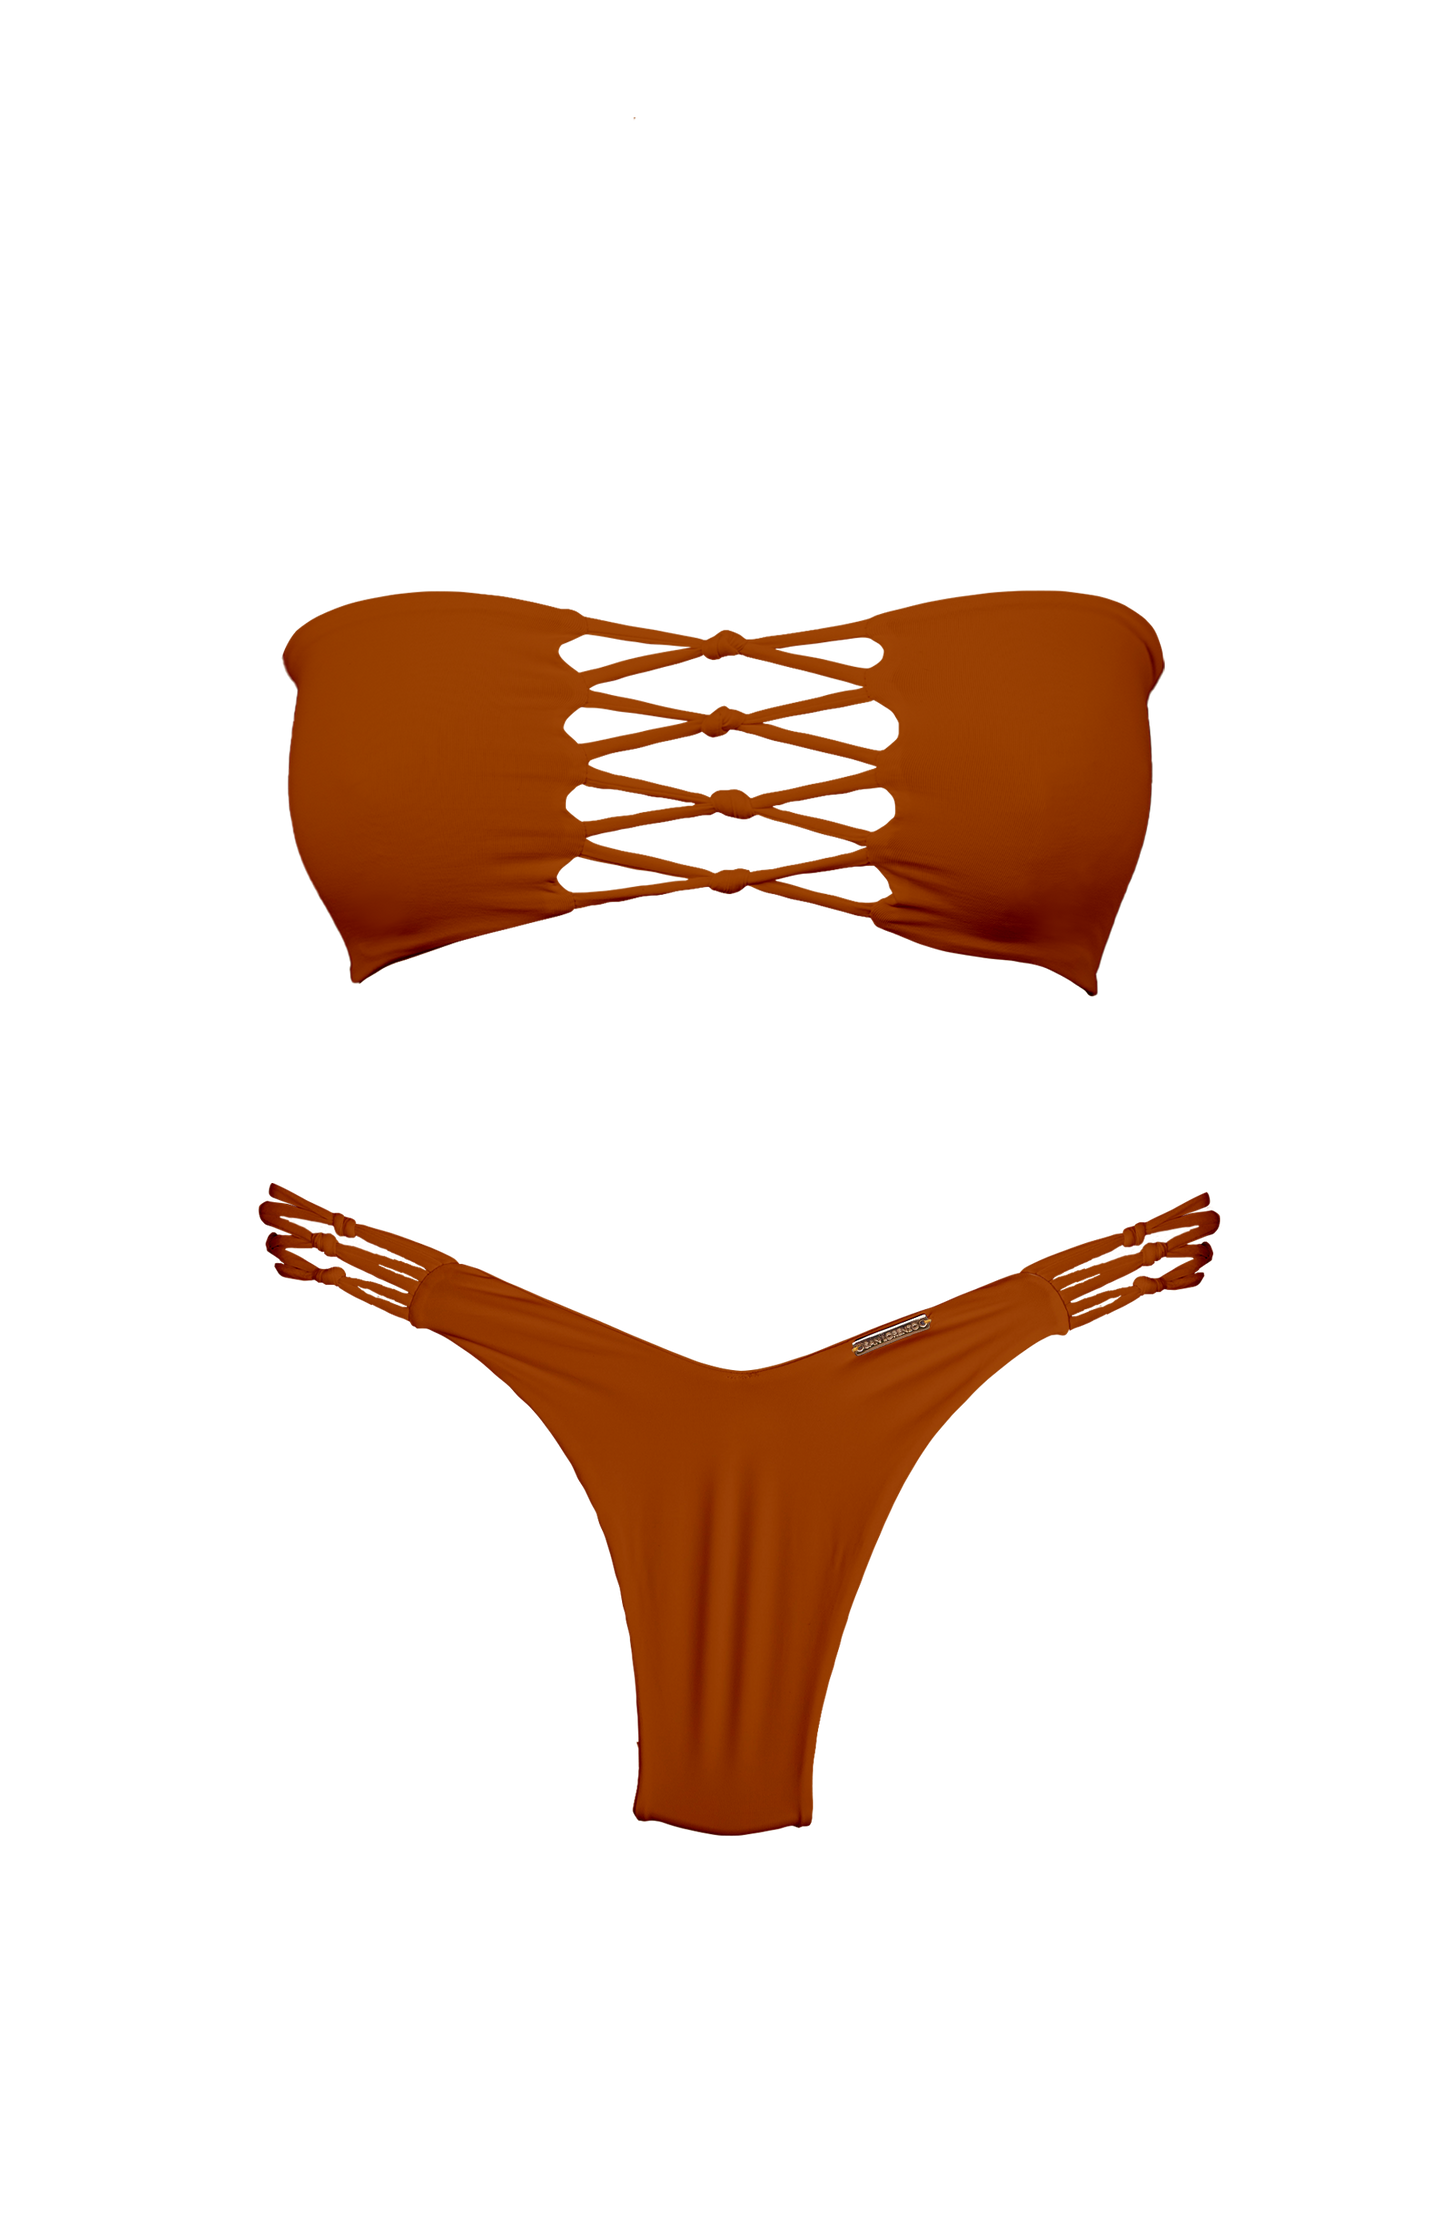 TAHITI MANA Persimmon Braided Thong Bikini Bottom